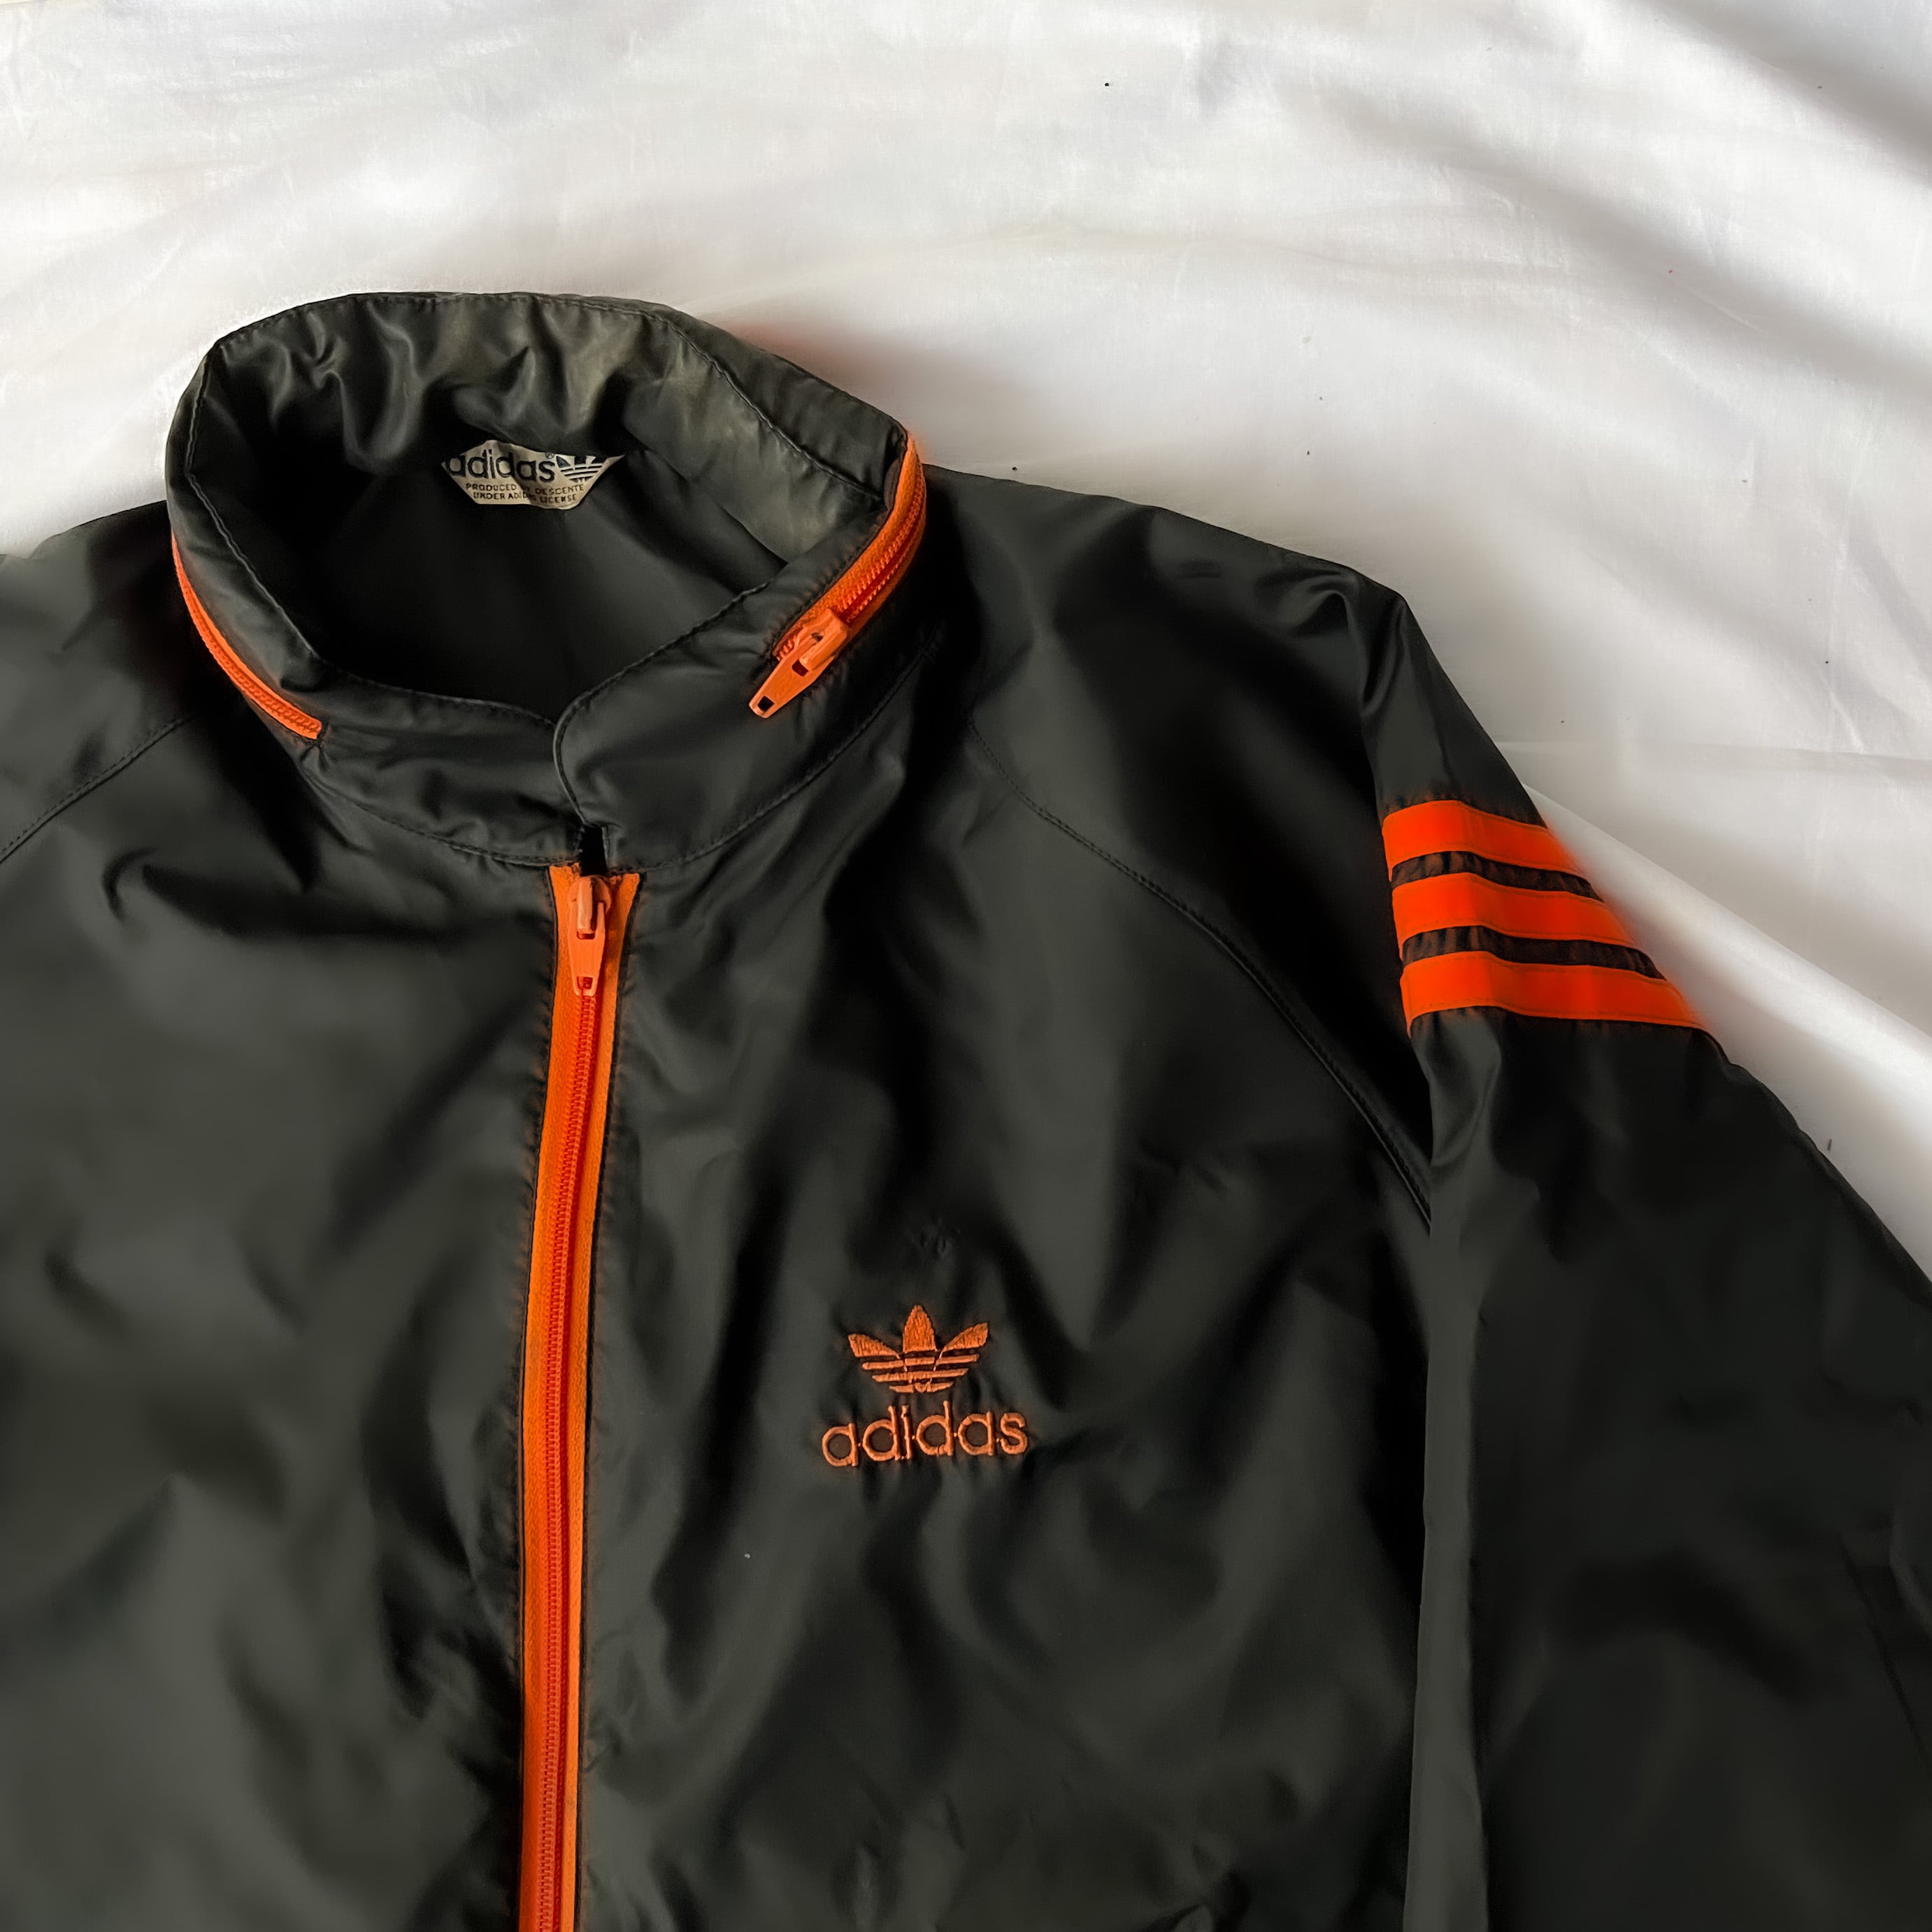 80s デサント “adidas” nylon jacket 80年代 アディダス ヴィンテージ ナイロンジャケット スリーライン トレフォイル  vintage オレンジ ブラック